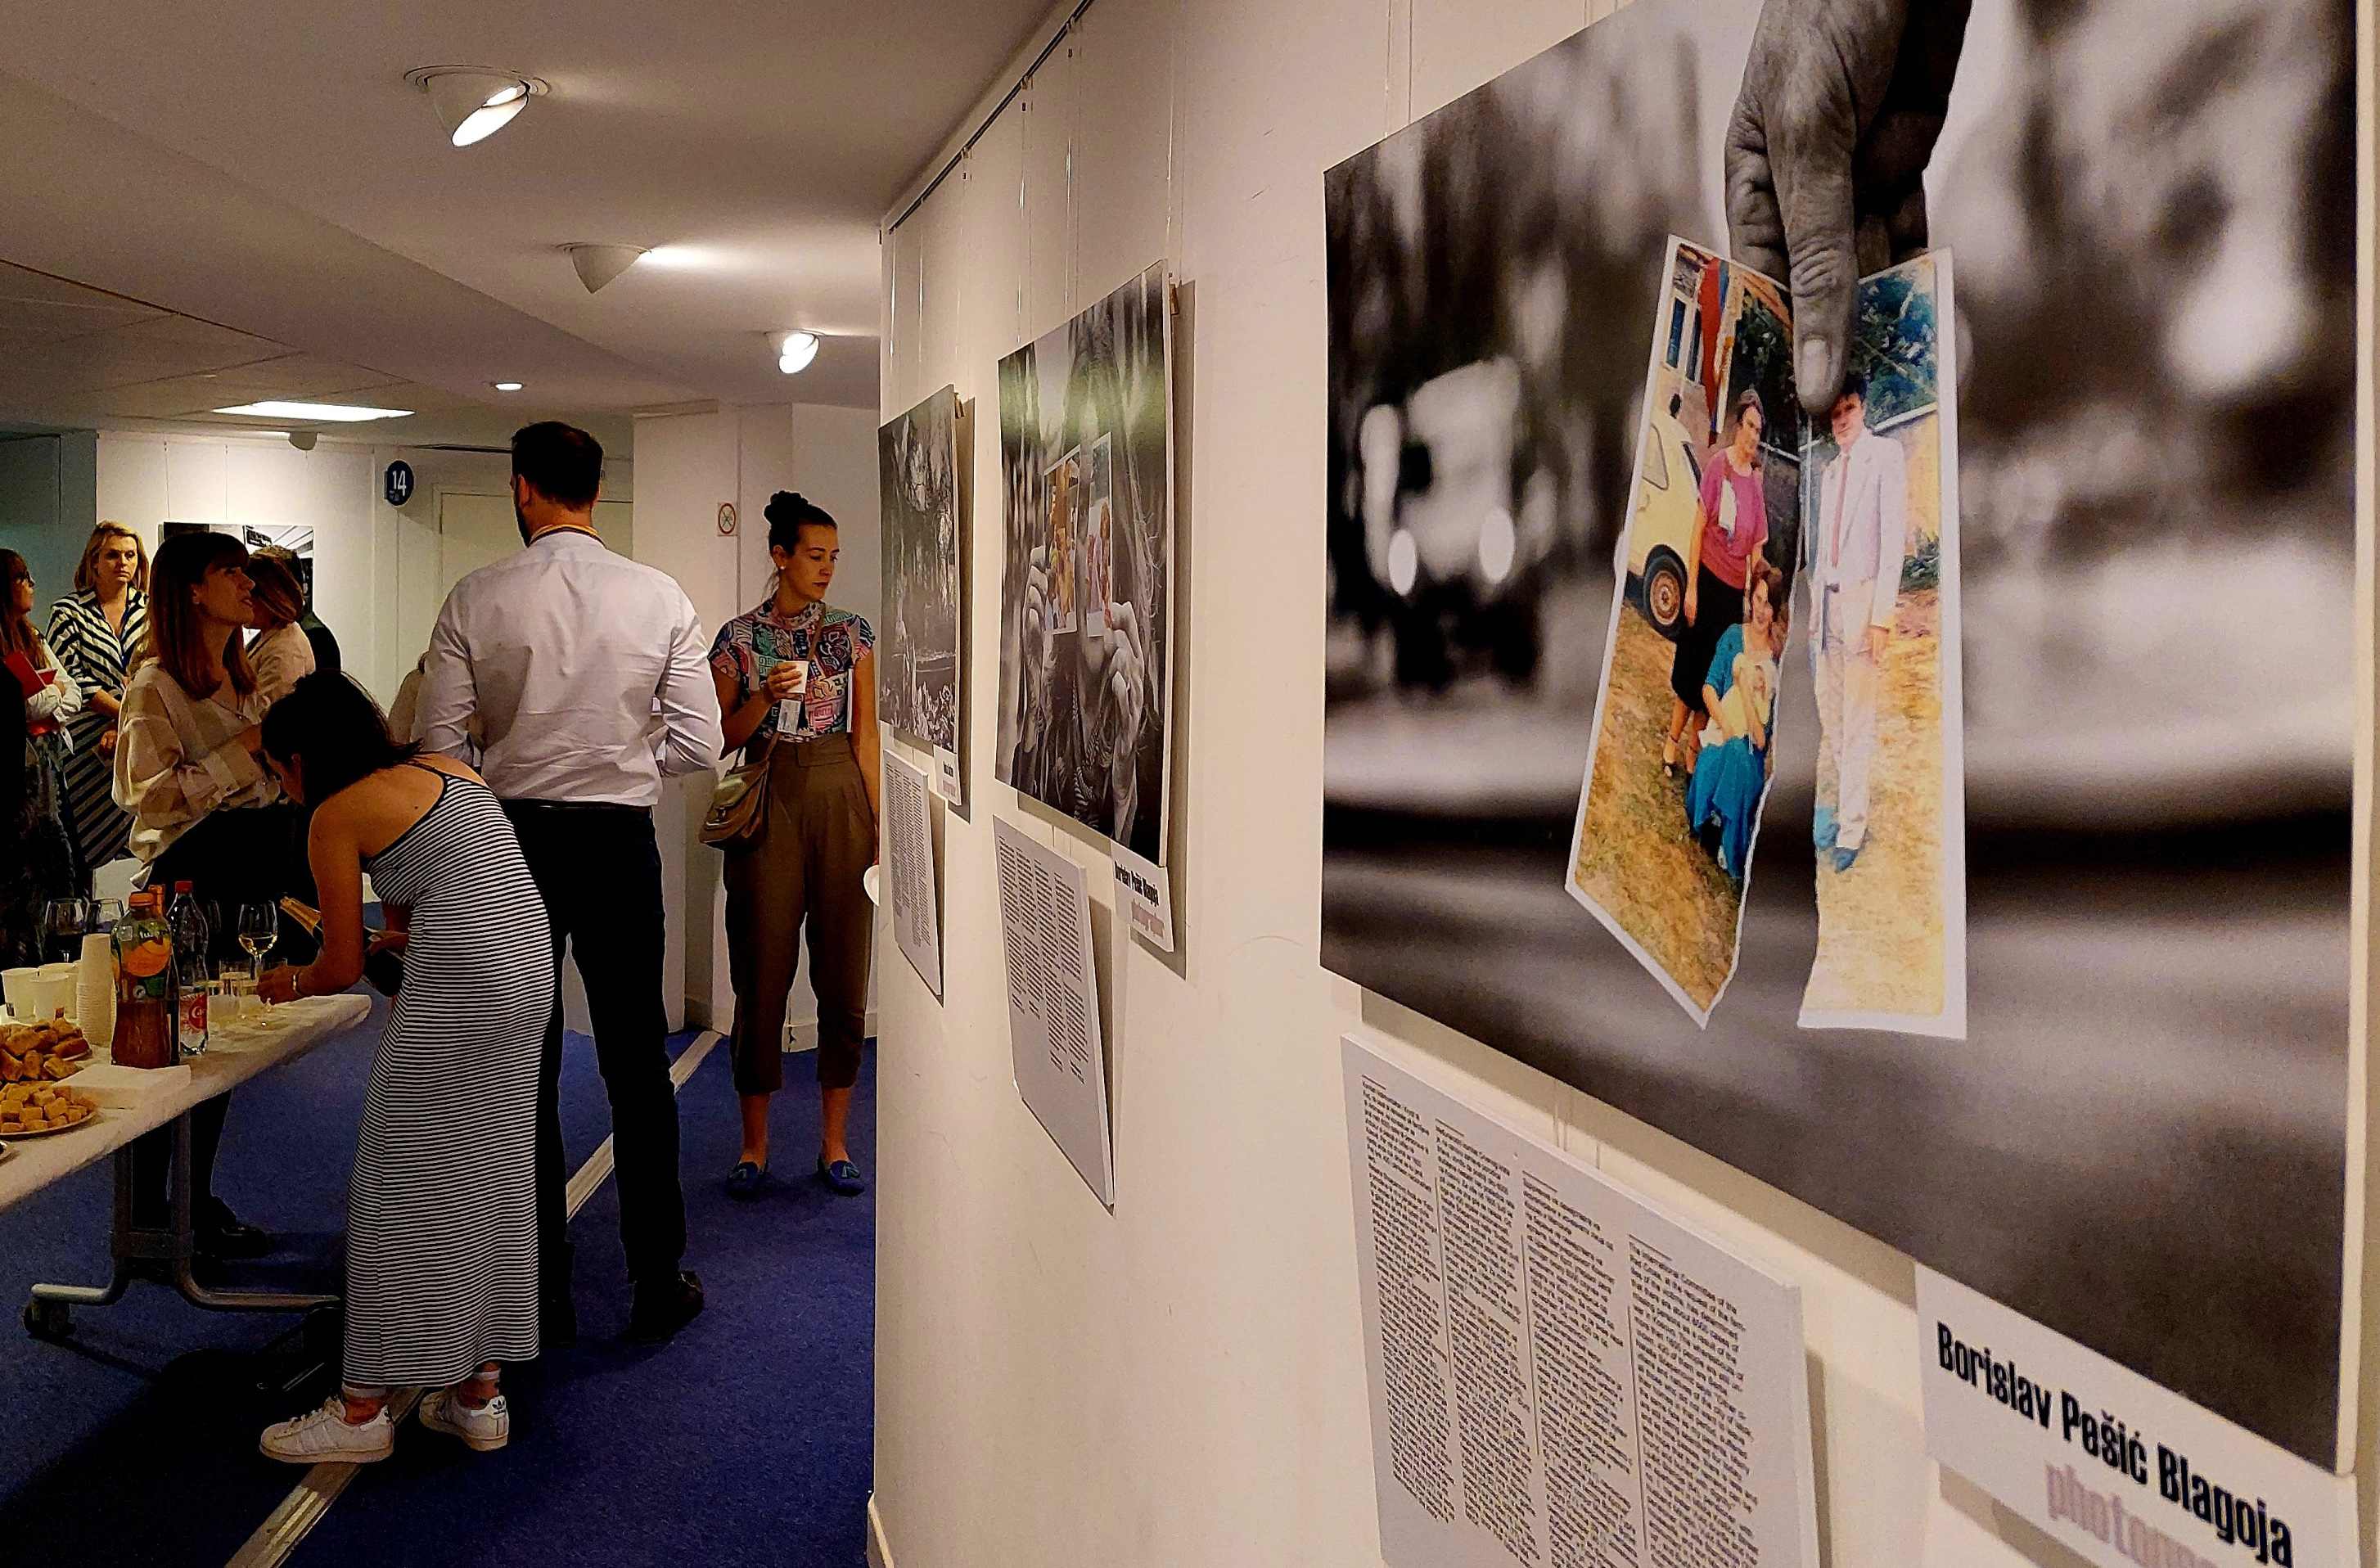 Les spectateurs regardent des photographies affichées sur le mur.